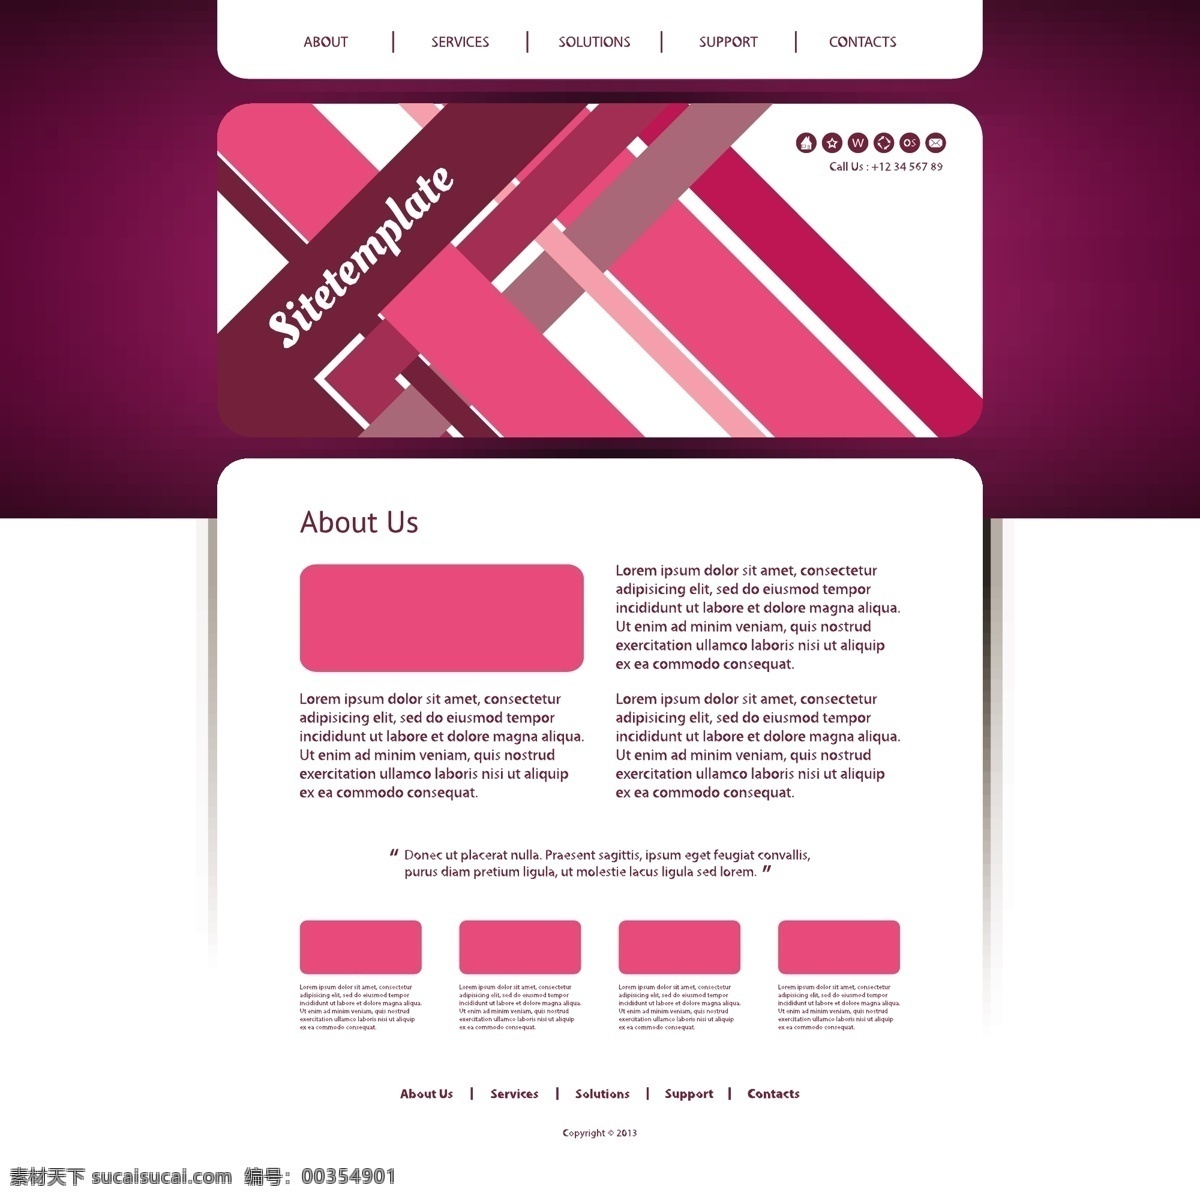 紫红色 网页设计 紫色 时尚 网页模板 网页界面 网站设计 网站模板 网页按钮 导航条 按钮图标 其他模板 矢量素材 白色